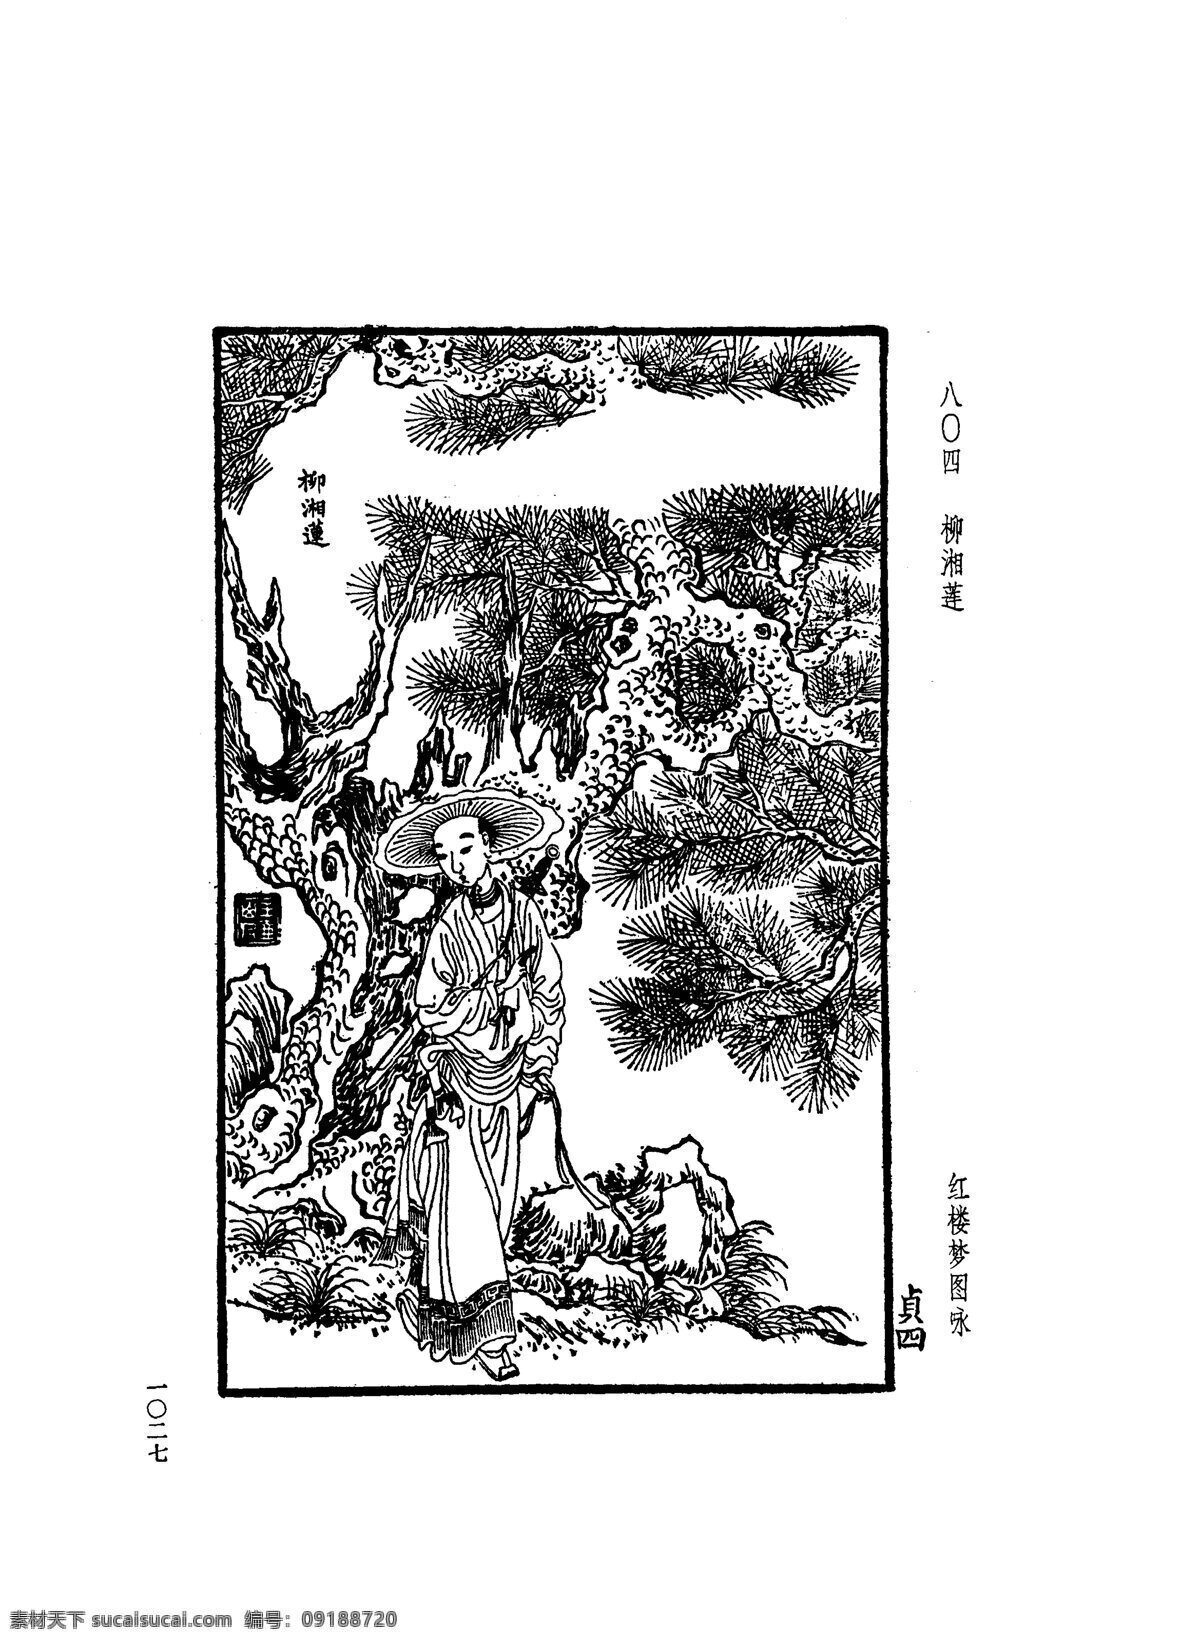 中国 古典文学 版画 选集 上 下册1055 设计素材 版画世界 书画美术 白色